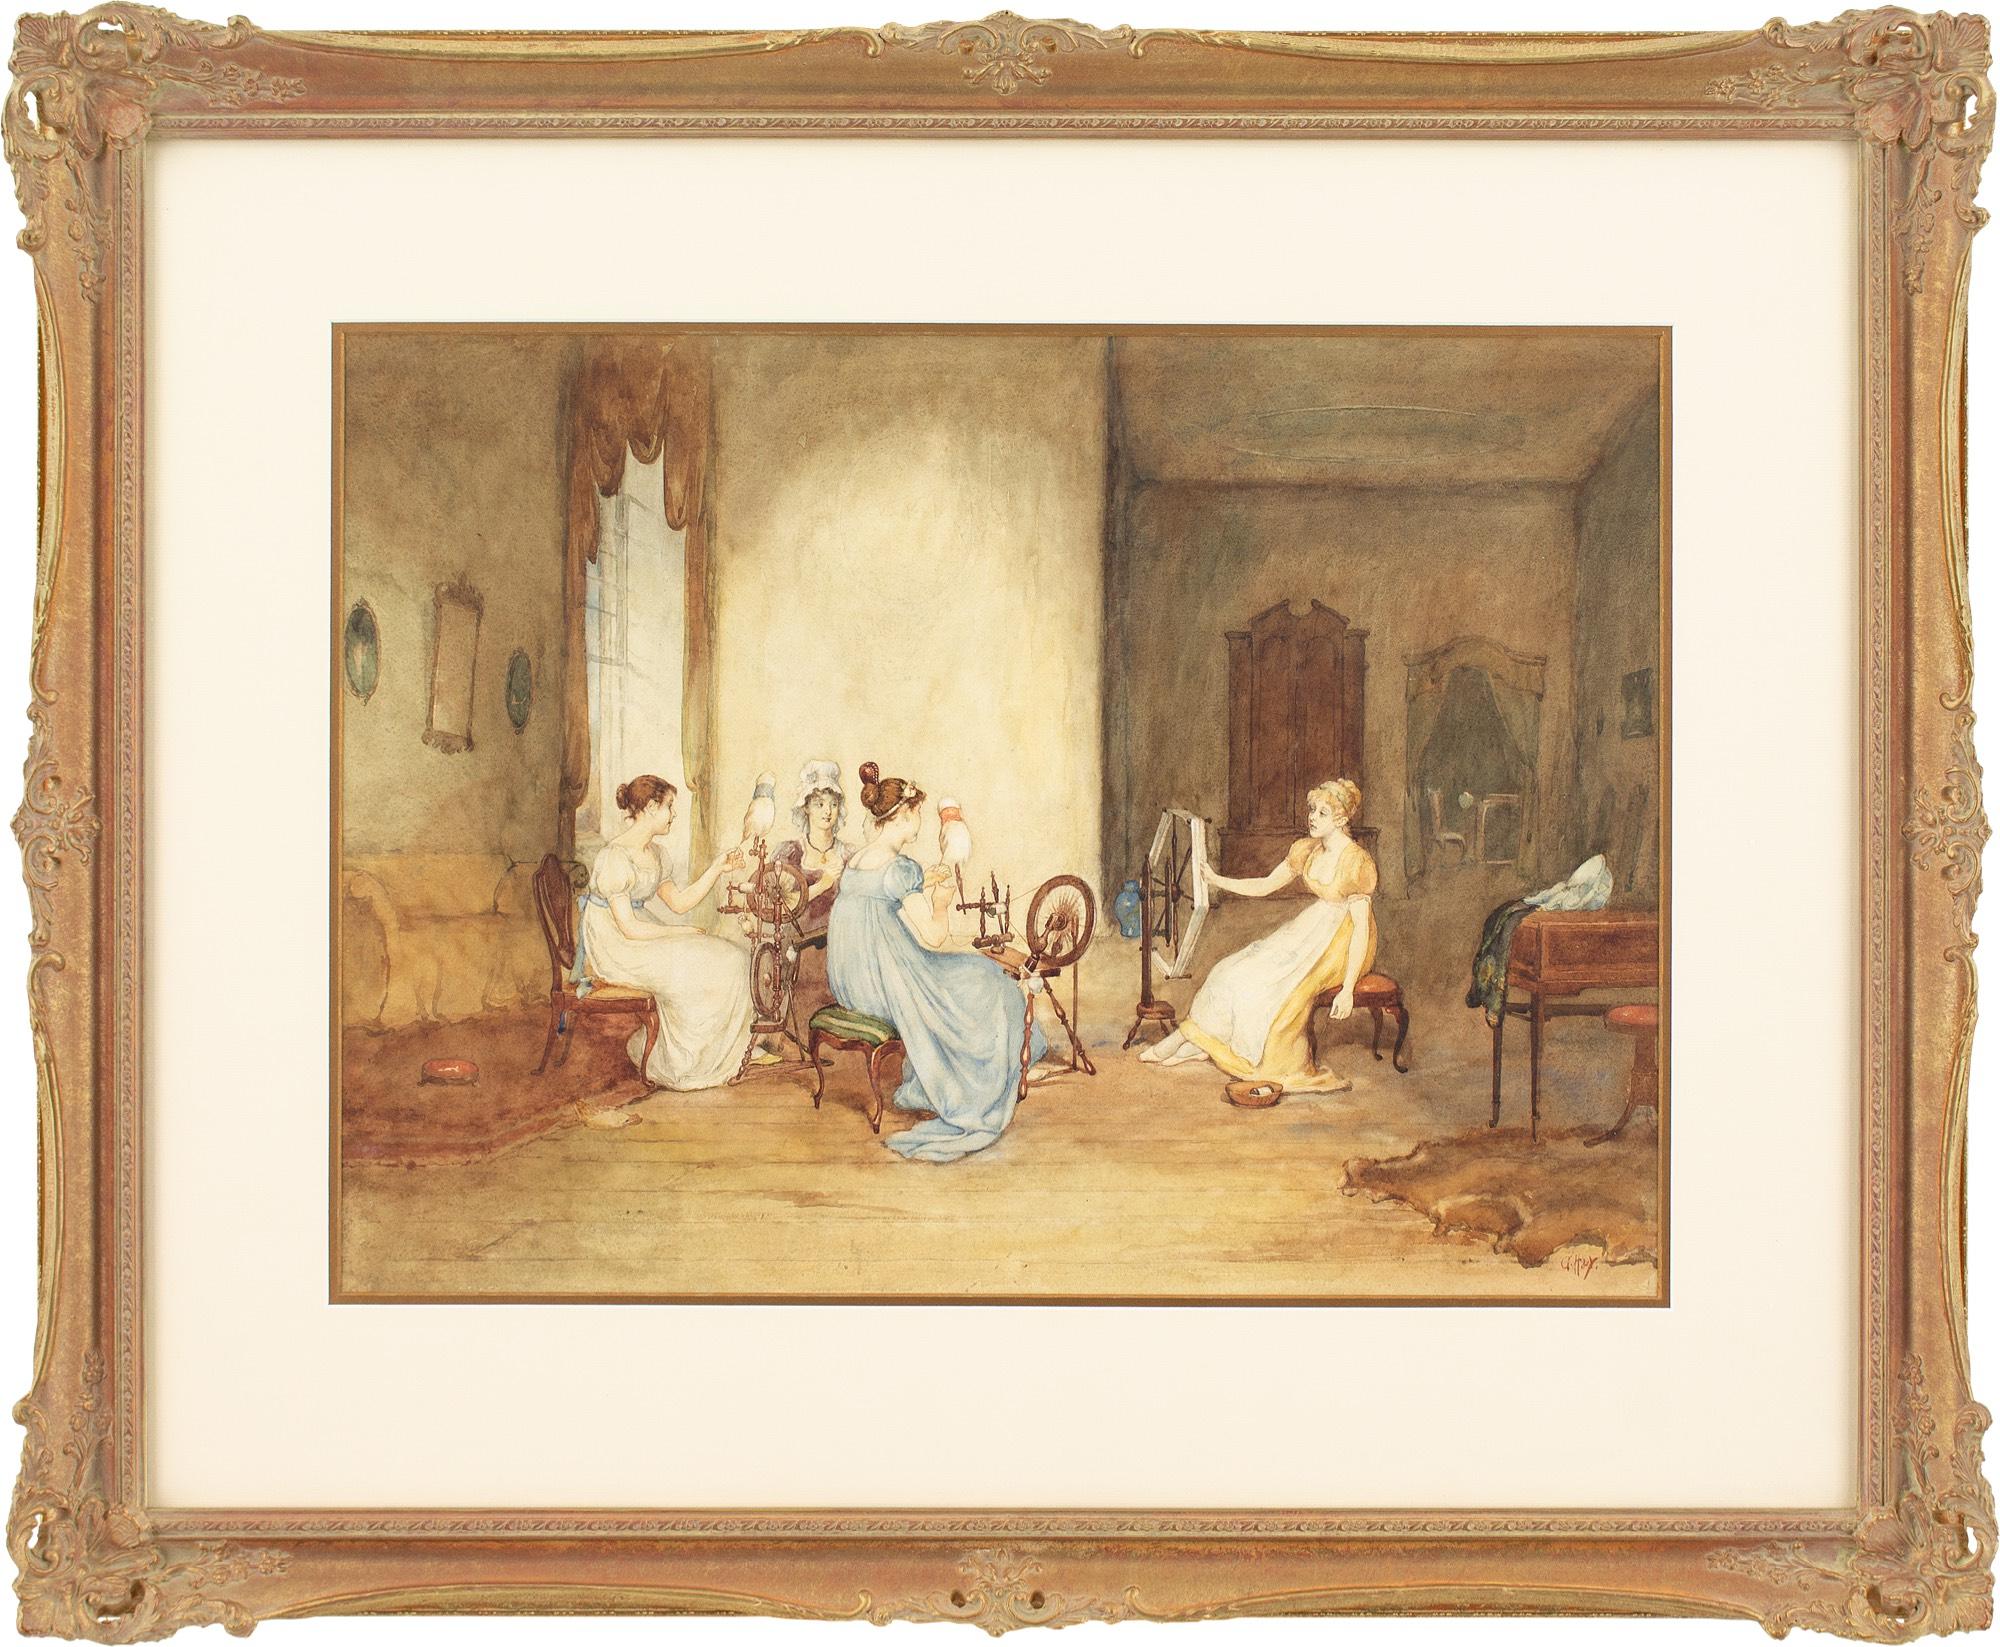 Cette aquarelle de la fin du XIXe siècle de l'artiste écossais George H Hay RSA (1831-1912) représente quatre jeunes femmes, portant des tenues synonymes des années 1820, en train de filer de la laine dans un intérieur simple.

George H Hay RSA